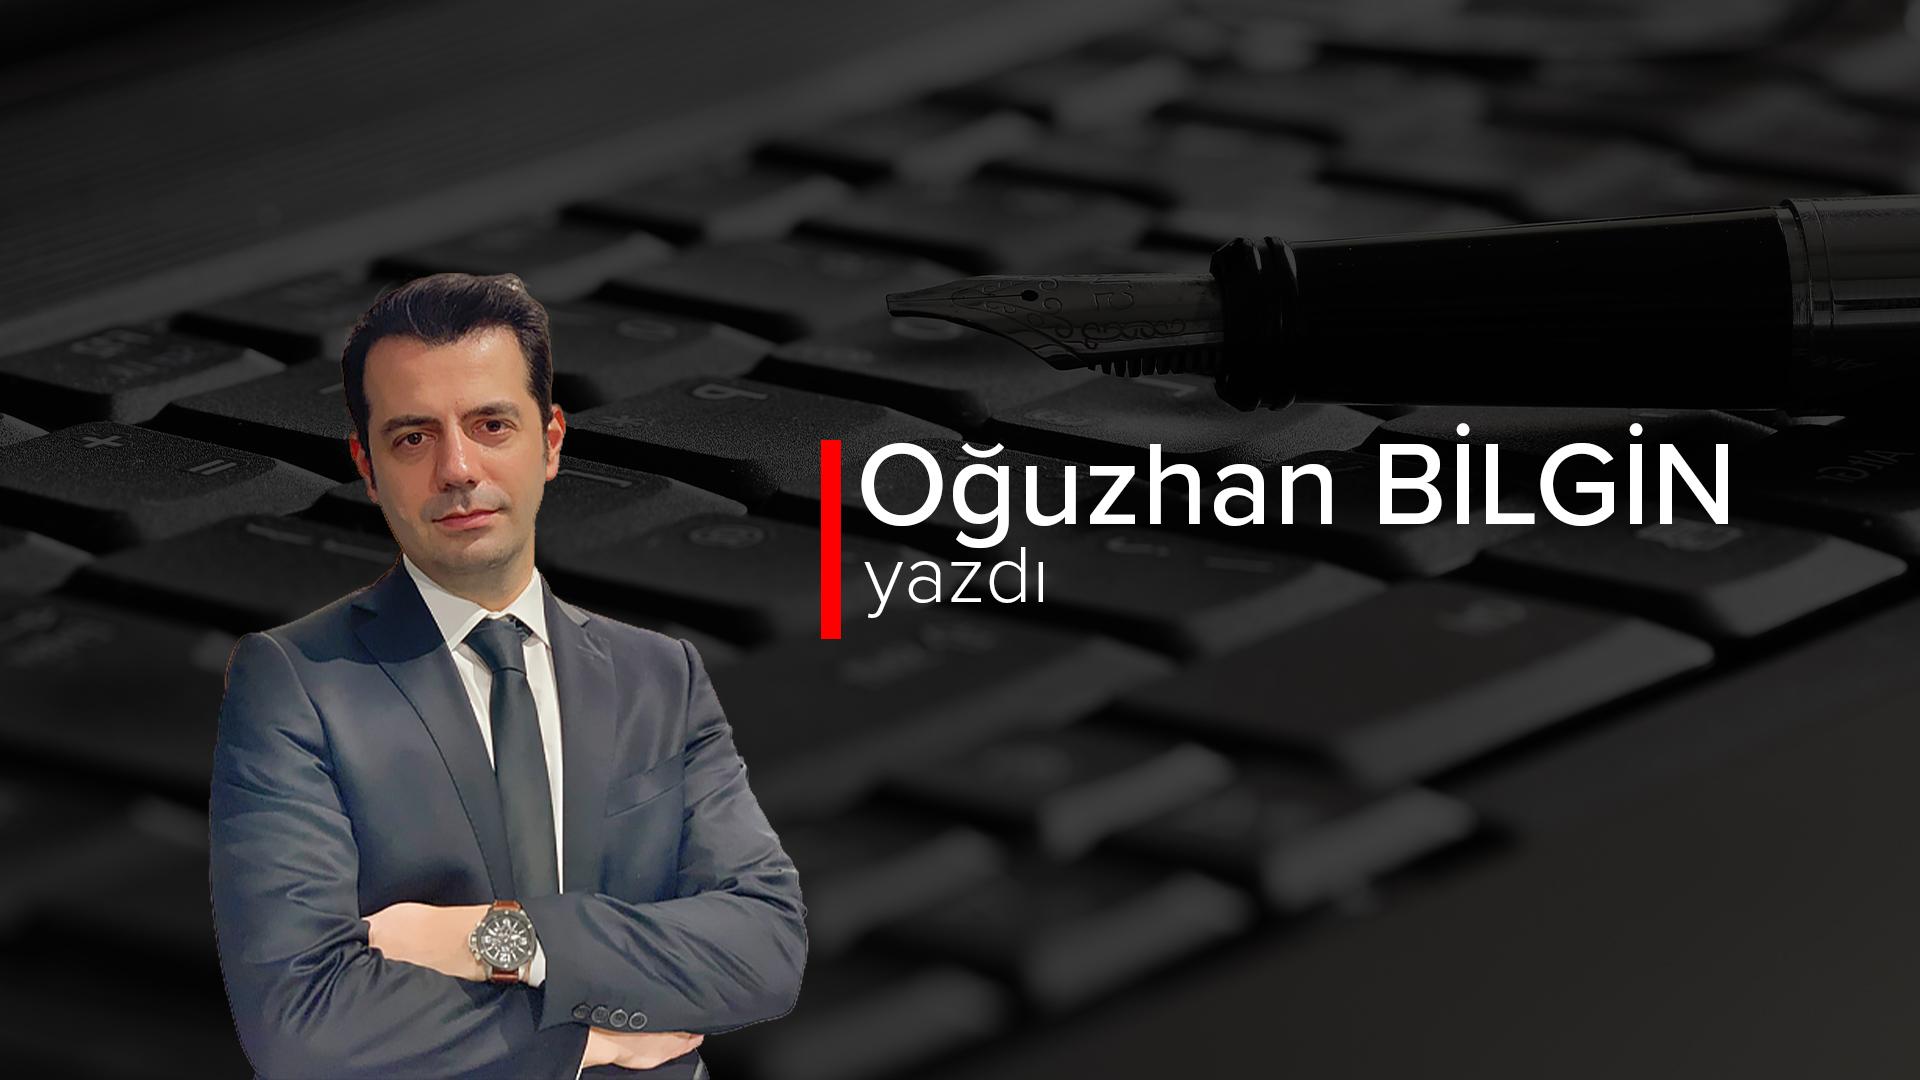 Κλείσιμο των τάξεων της τουρκικής δεξιάς – Oğuzhan Bilgin